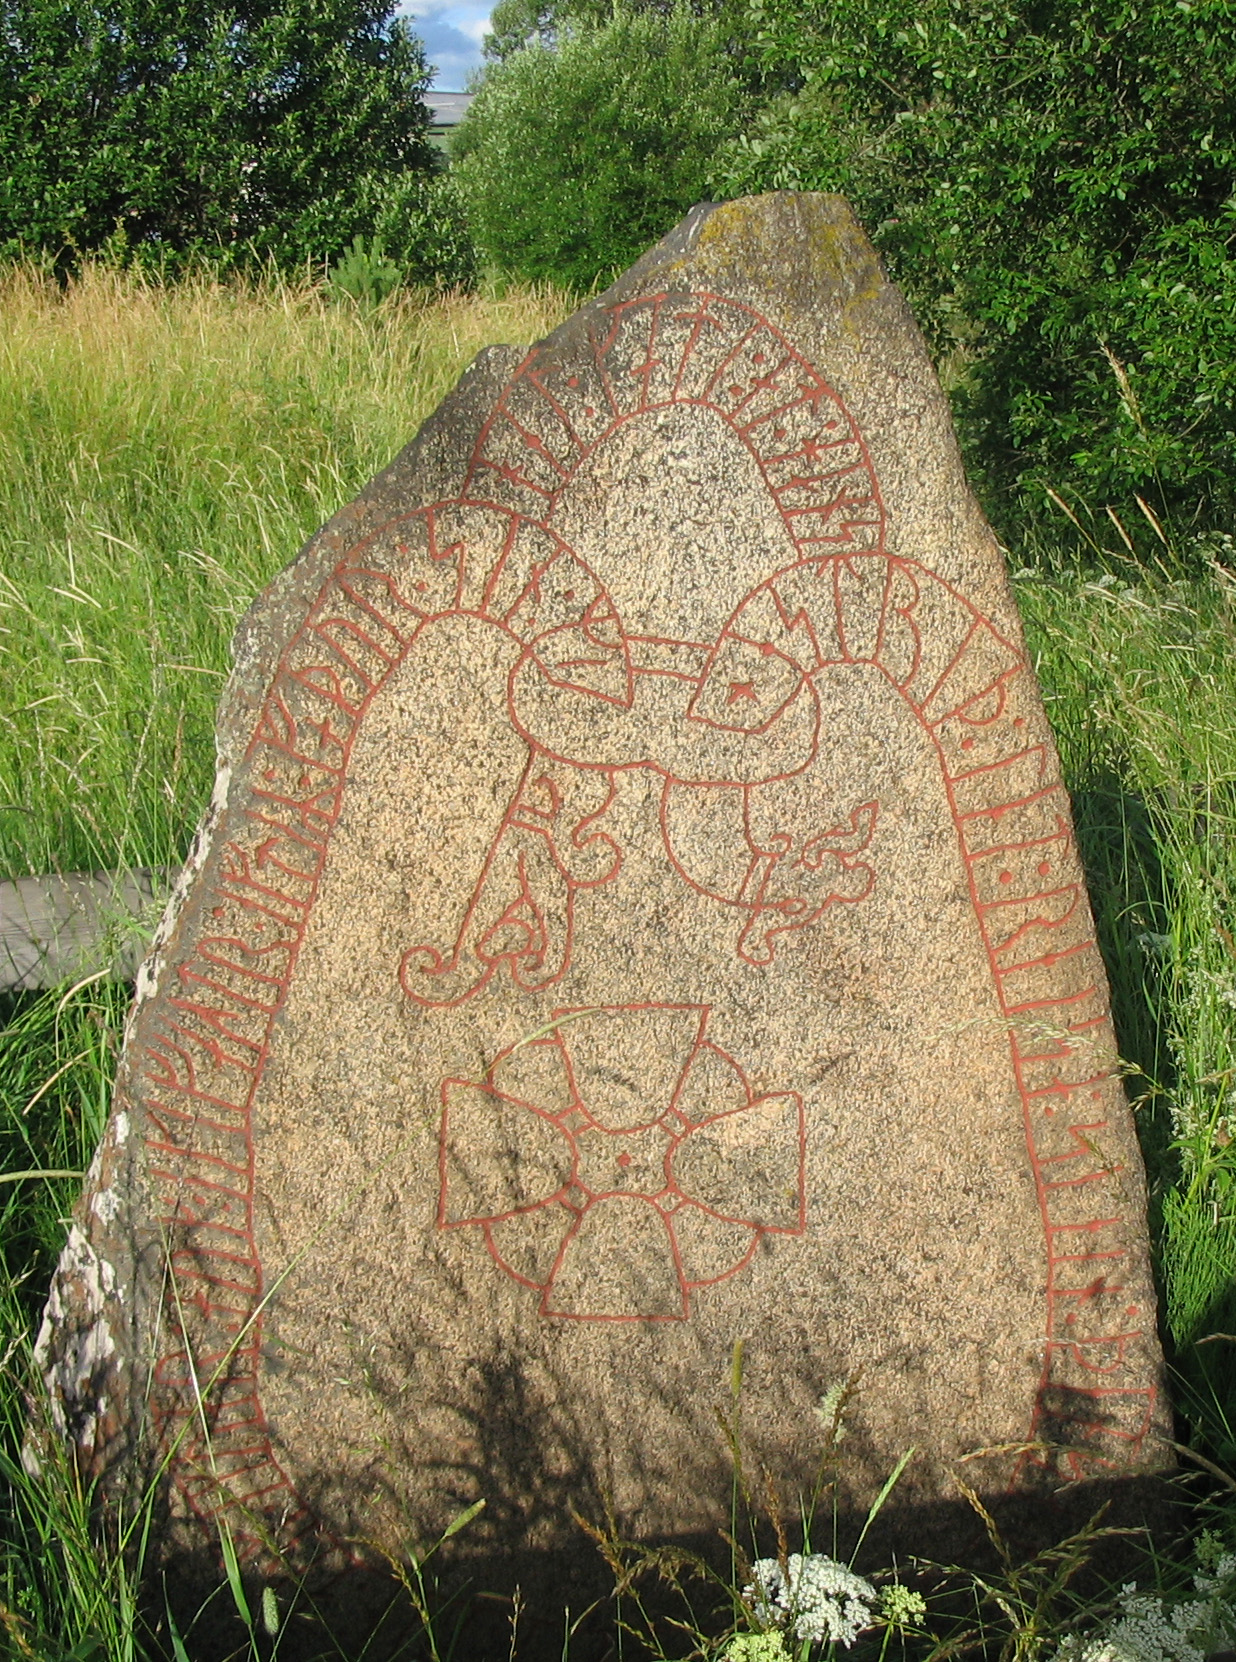 11th century runestone at Knivsta, south of Upssala, Sweden. The runestone reads: 'Ástríðr lét reisa stein þenna eptir Jóar/Ívar, bónda sinn, ok Ingvarr ok Ingifastr eptir fôður sinn. Mikjáll gæti ônd hans.' Translation: 'Ástríðr had this stone raised in memory of Jóarr/Ívarr, her husbandman; and Ingvarr and Ingifastr in memory of their father. May Michael protect his spirit.' Image source: www.commons.wikimedia.org